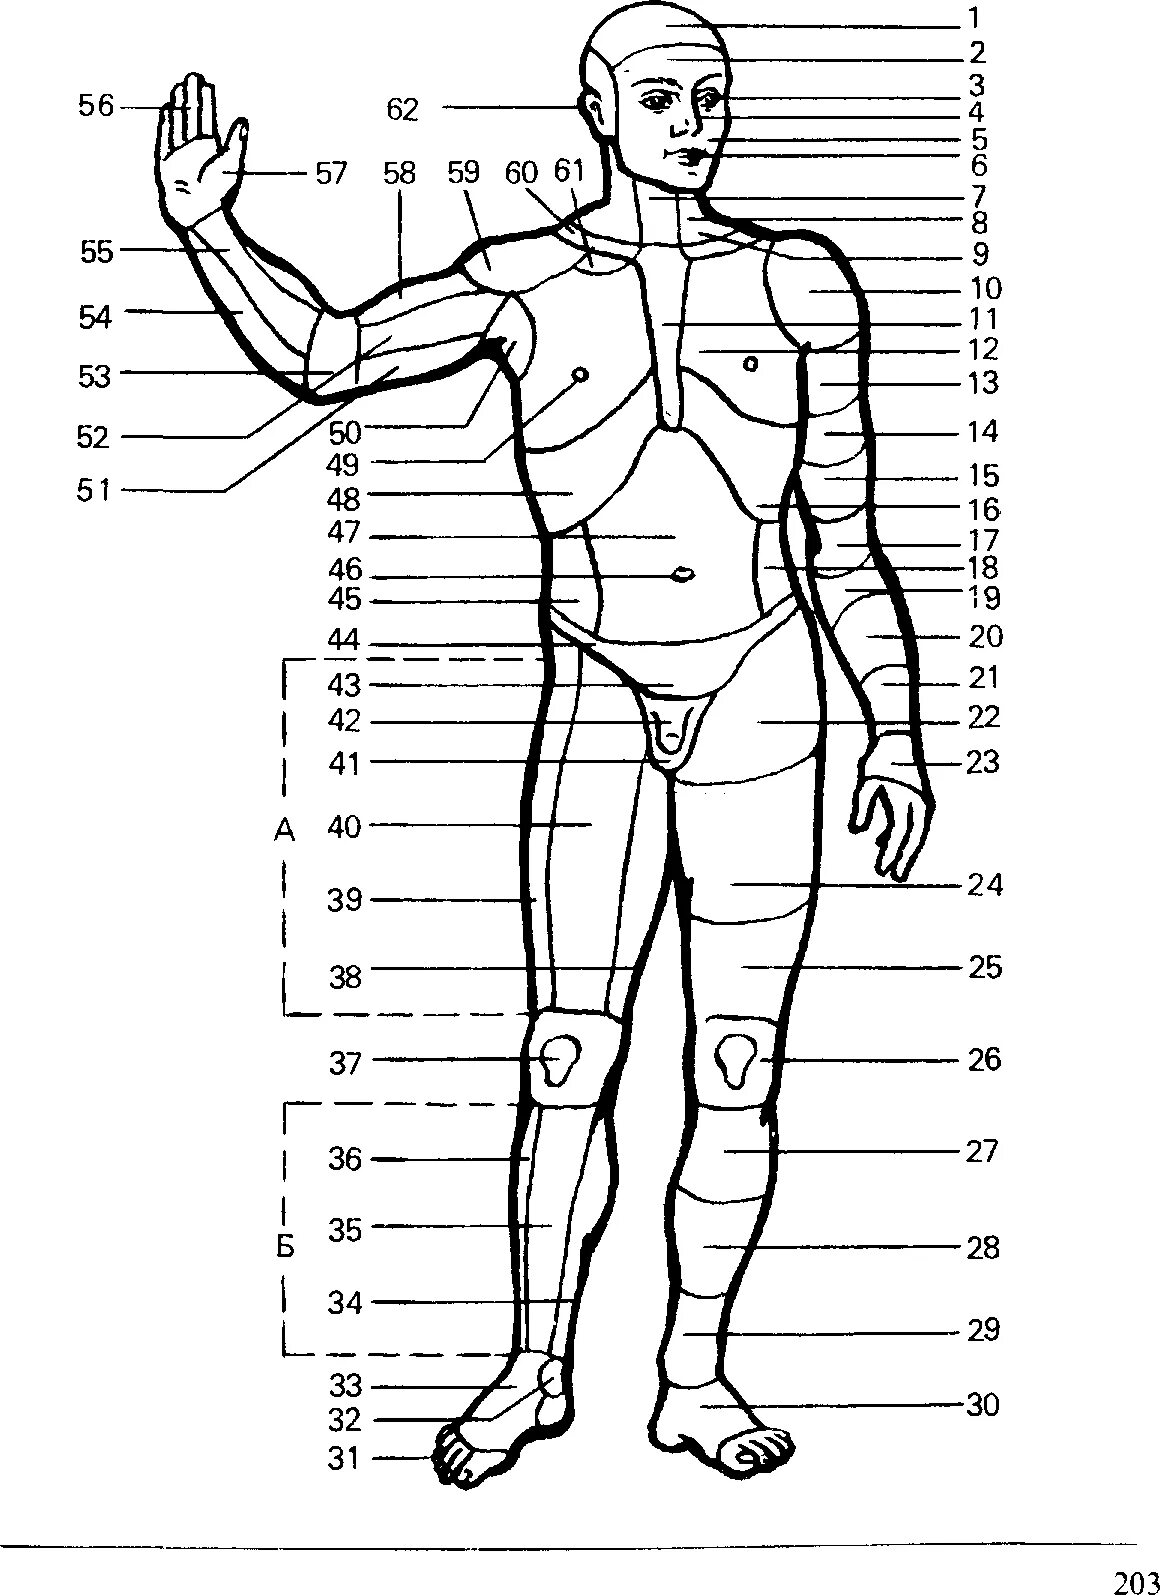 Какие части тела у человека. Наименование частей тела человека криминалистика. Анатомические области тела человека схема. Назовите части тела человека криминалистика. Название частей ттнла человкк.